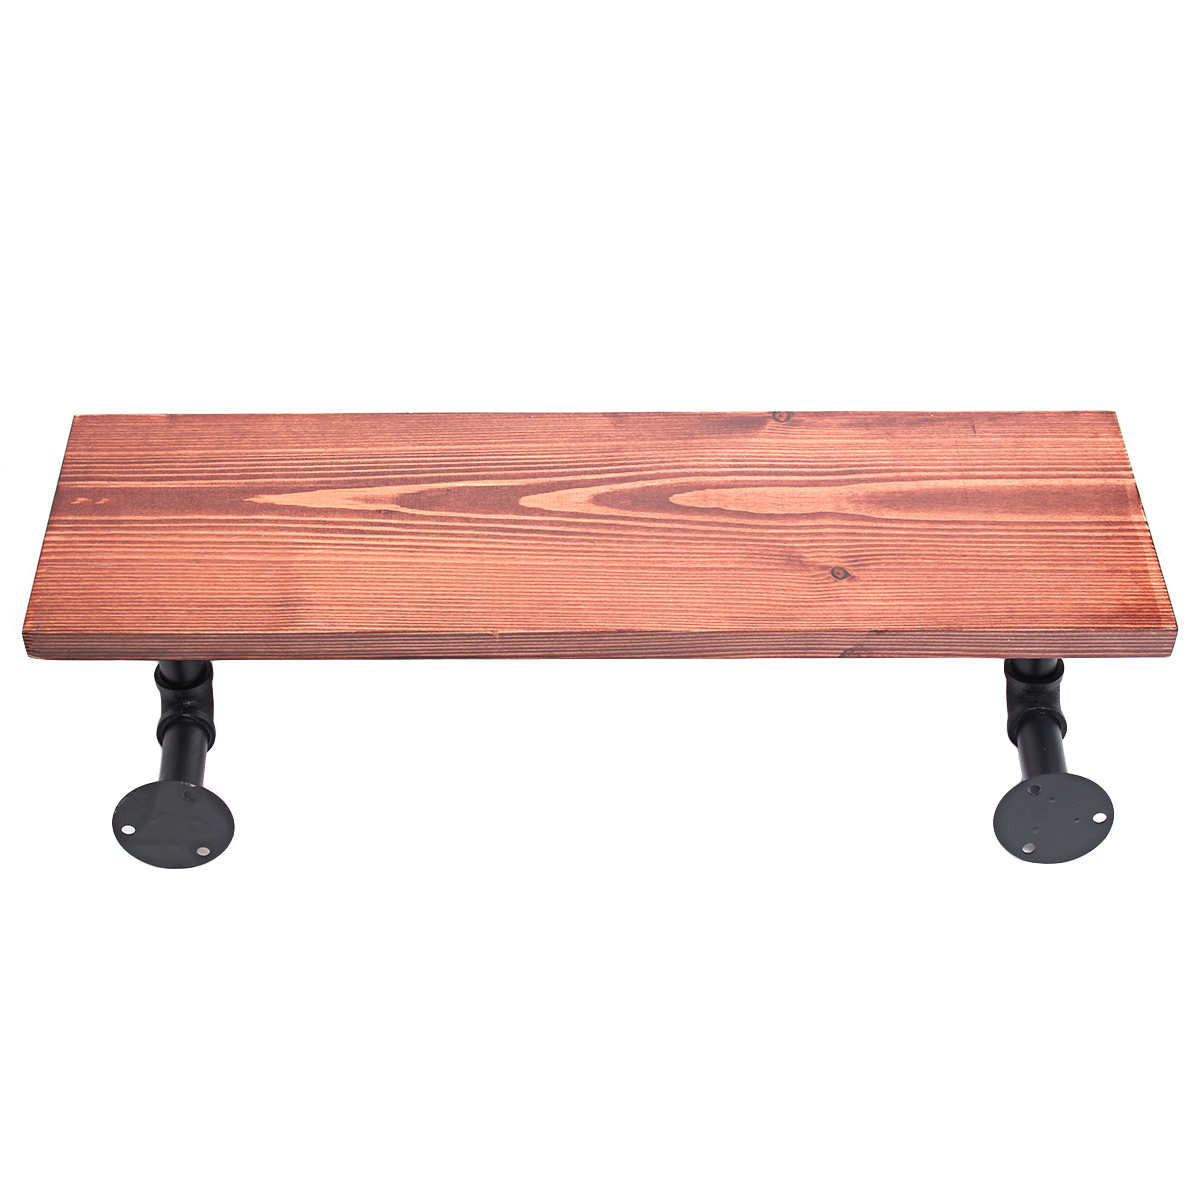 3Pcs-406080cm-Wooden-Board-Shelves-Wall-Mount-Floating-Shelf-Display-Bracket-Waterproof-Decor-1390599-7